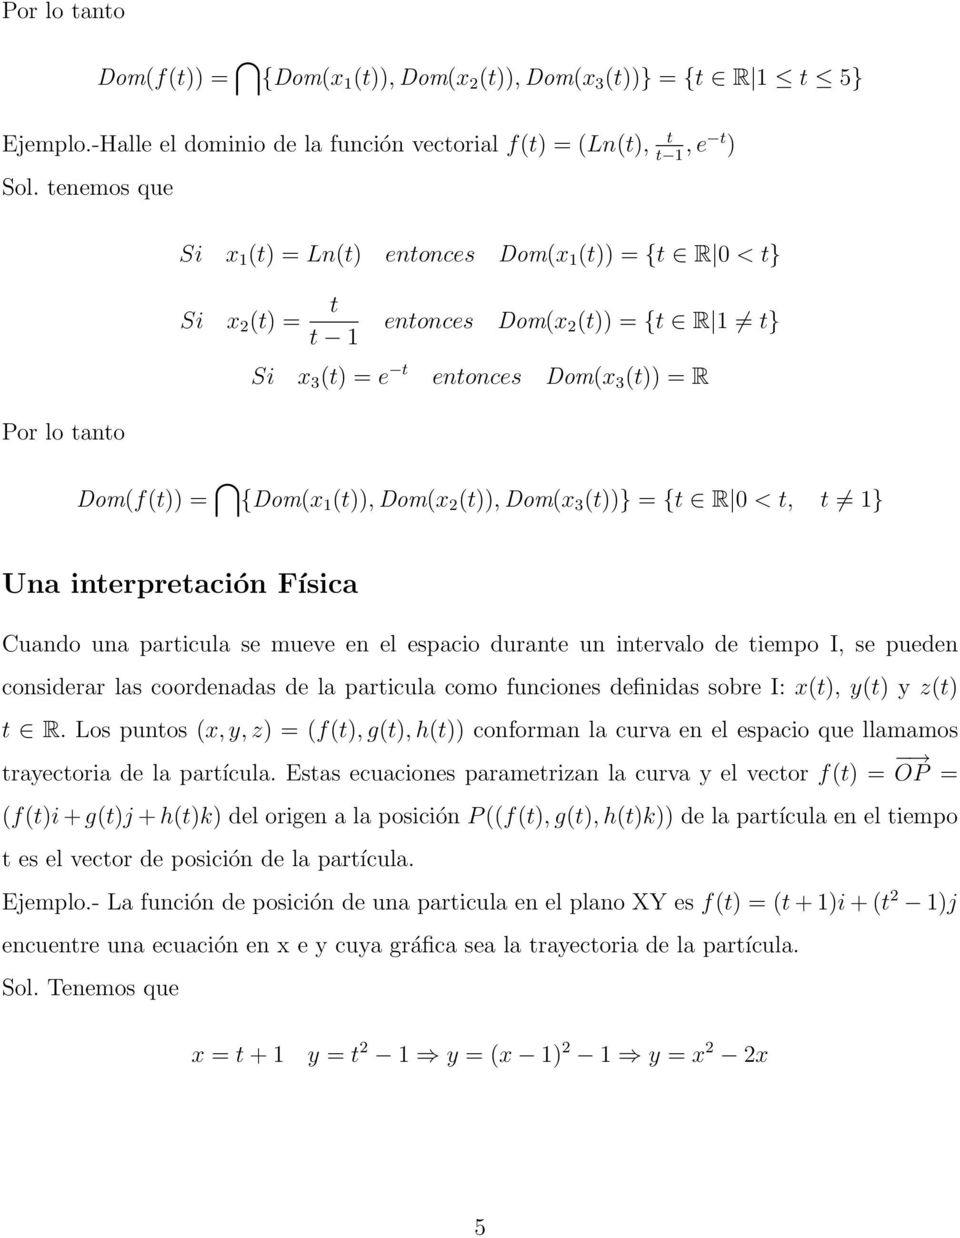 (t)), Dom(x 2 (t)), Dom(x 3 (t))} = {t R 0 < t, t 1} Una intepetación Física Cuando una paticula se mueve en el espacio duante un intevalo de tiempo I, se pueden considea las coodenadas de la